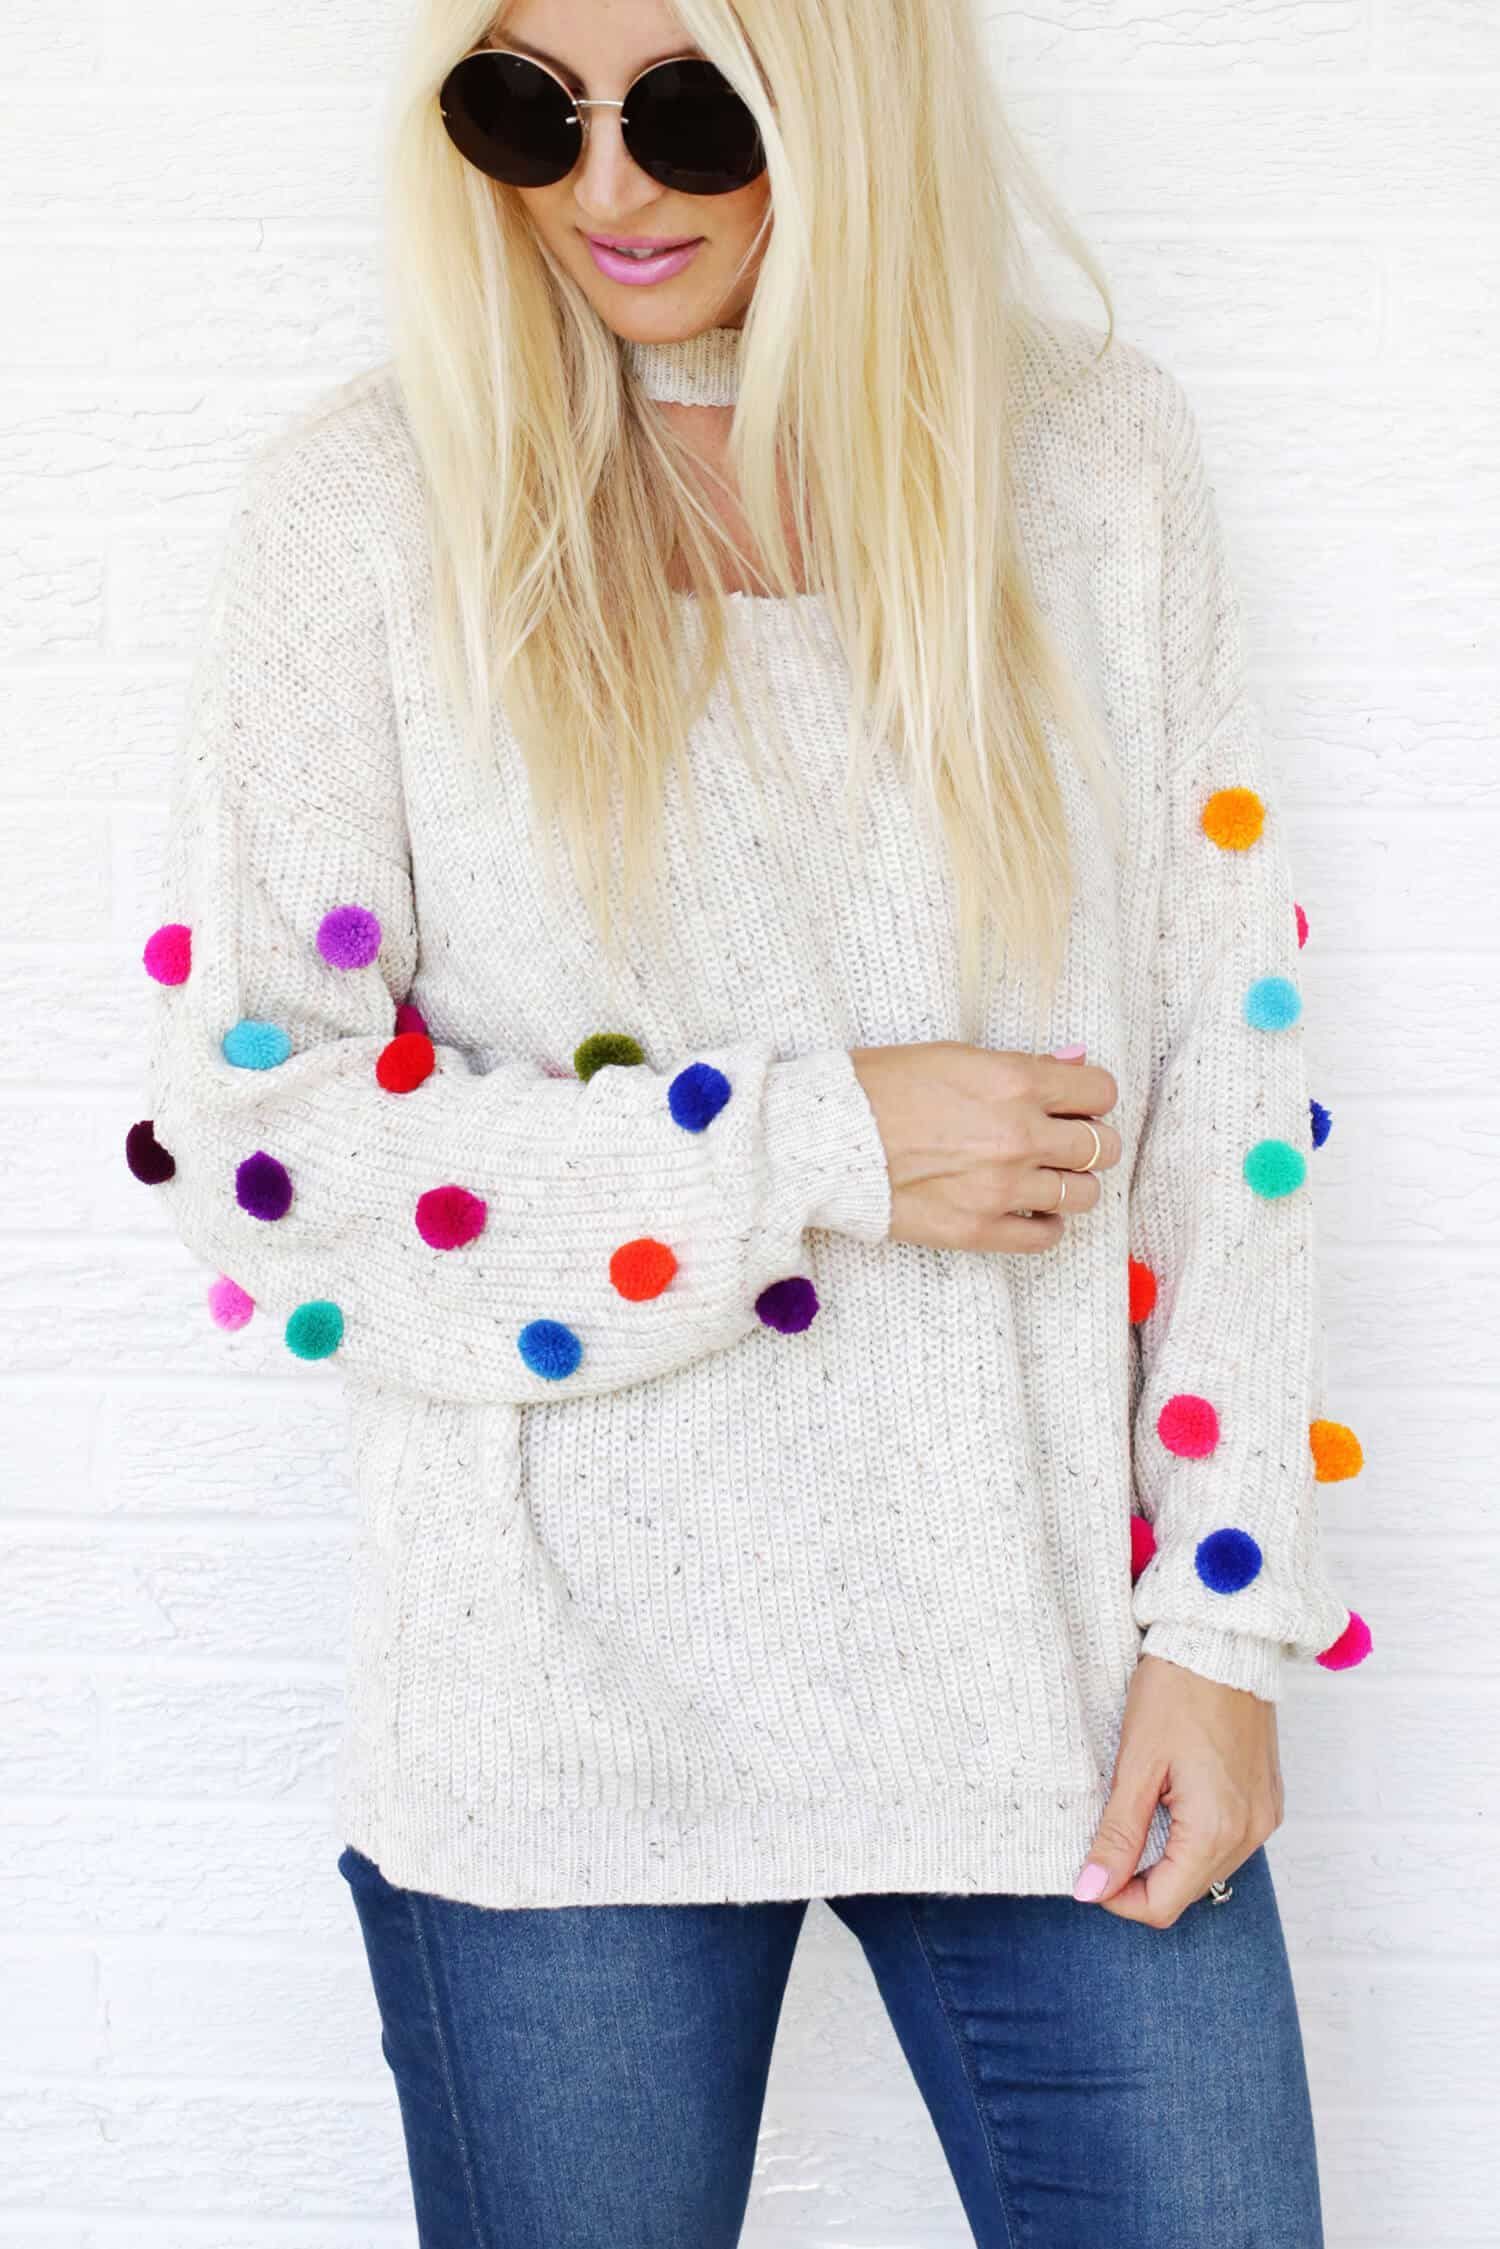 Pom Pom Sweater DIY - A Beautiful Mess - Pom Pom Sweater DIY - A Beautiful Mess -   17 diy Fashion crafts ideas